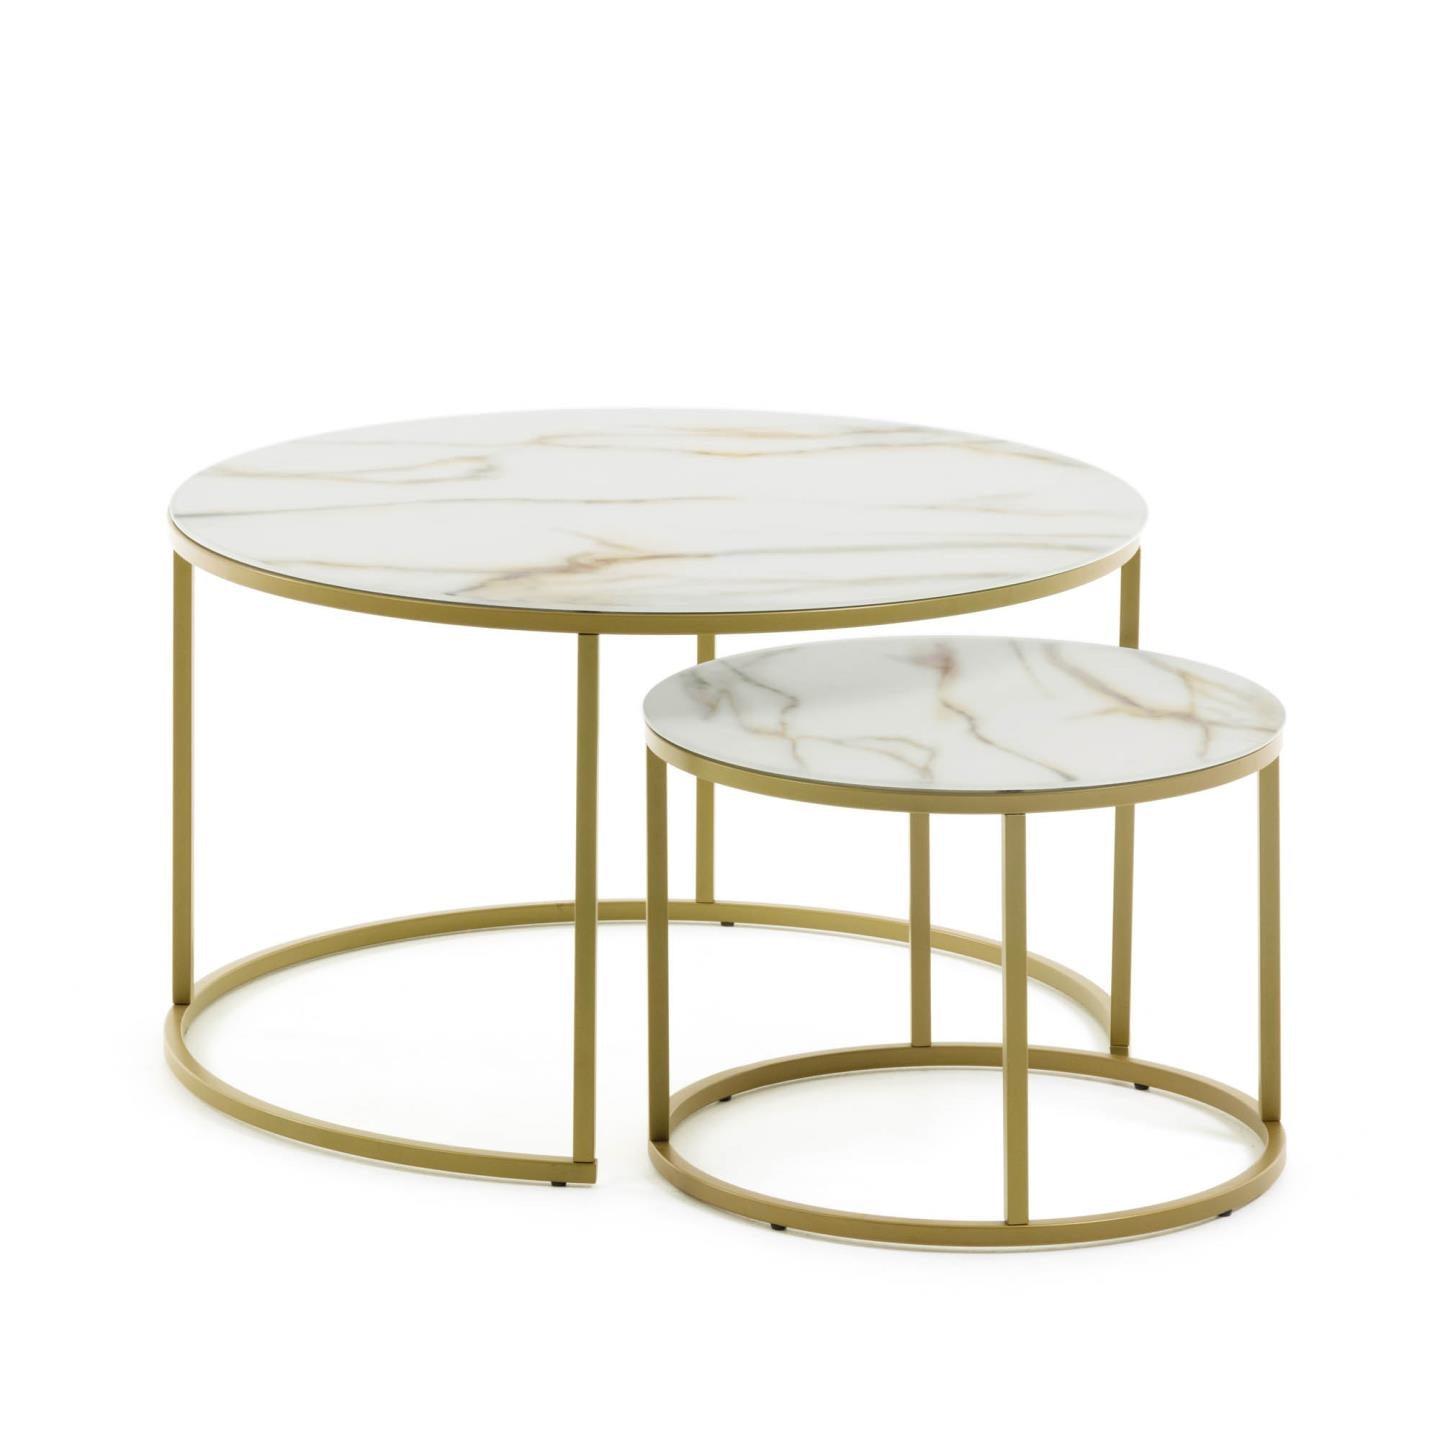 Leonor 2 db üveg kisasztal fehér színben és aranyszínű acélszerkezettel Ø 80 cm / Ø 50 cm